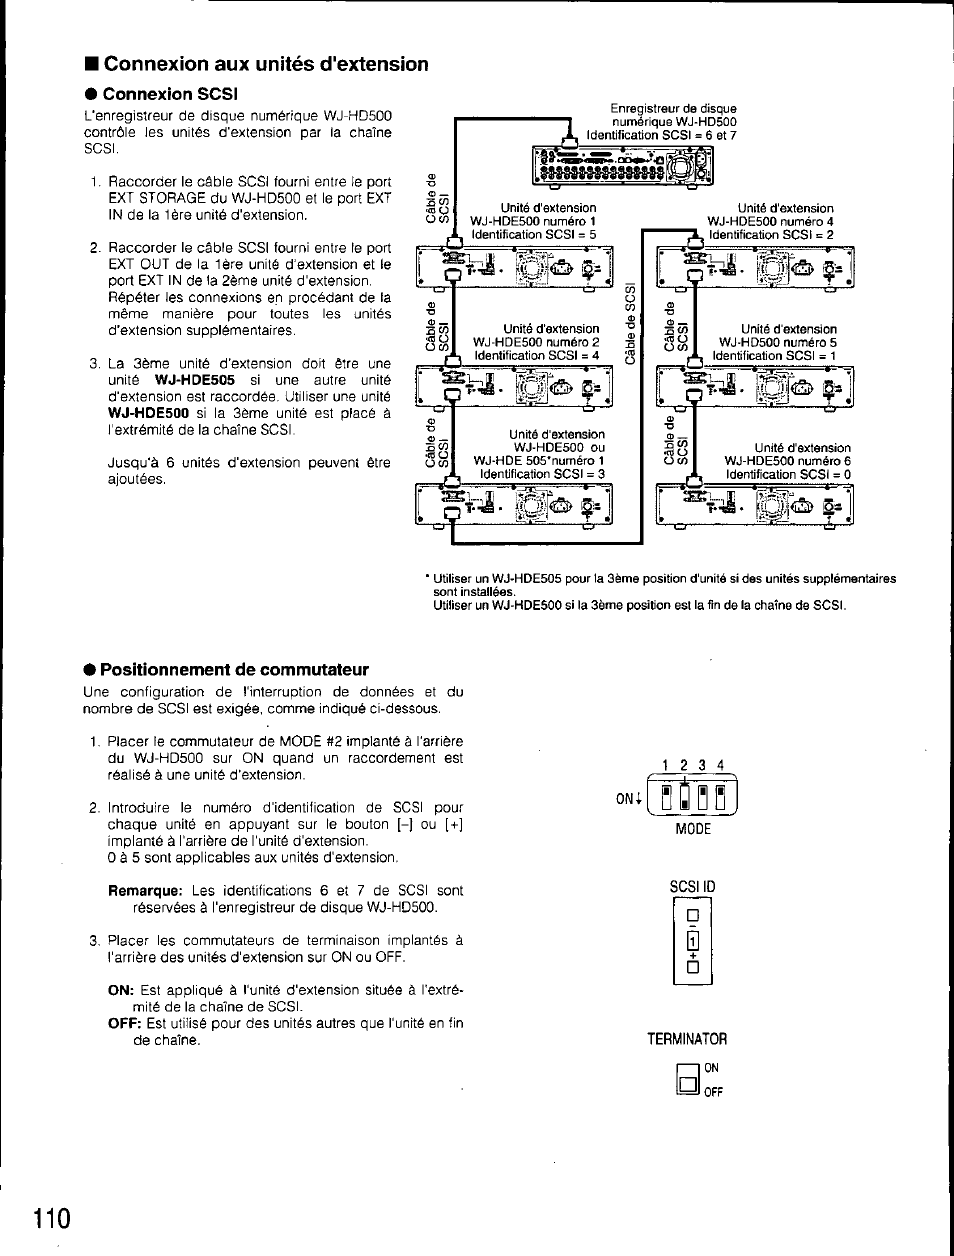 Connexion aux unités d'extension, Connexion scsi, Positionnement de commutateur | Mmmîmm | Panasonic WJ-HD500 Manuel d'utilisation | Page 109 / 181